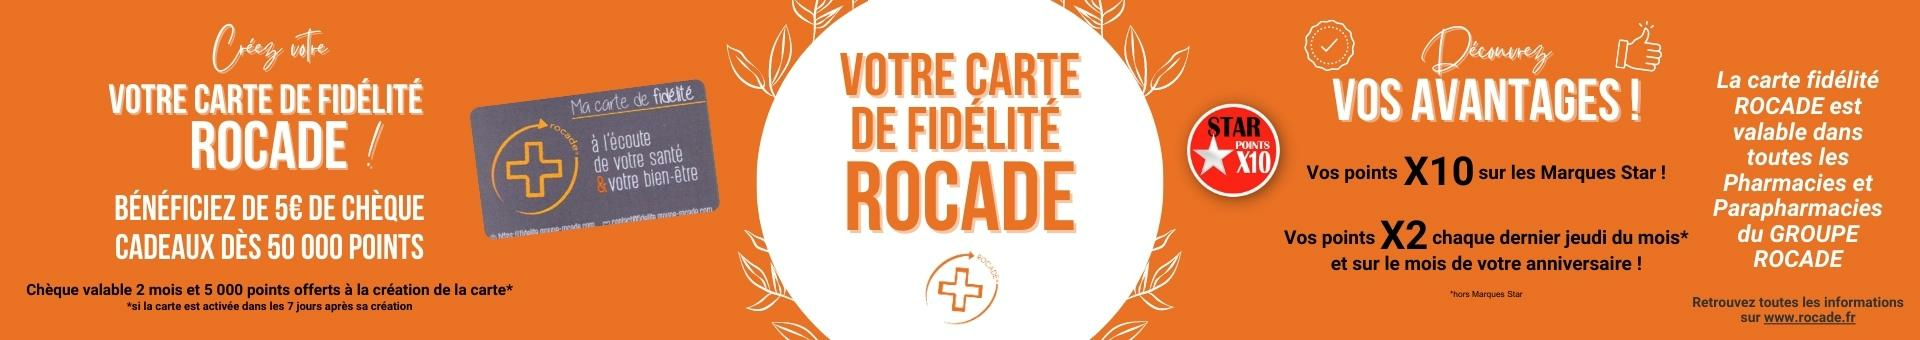 Pharmacie Rocade Sainte Catherine,Bordeaux